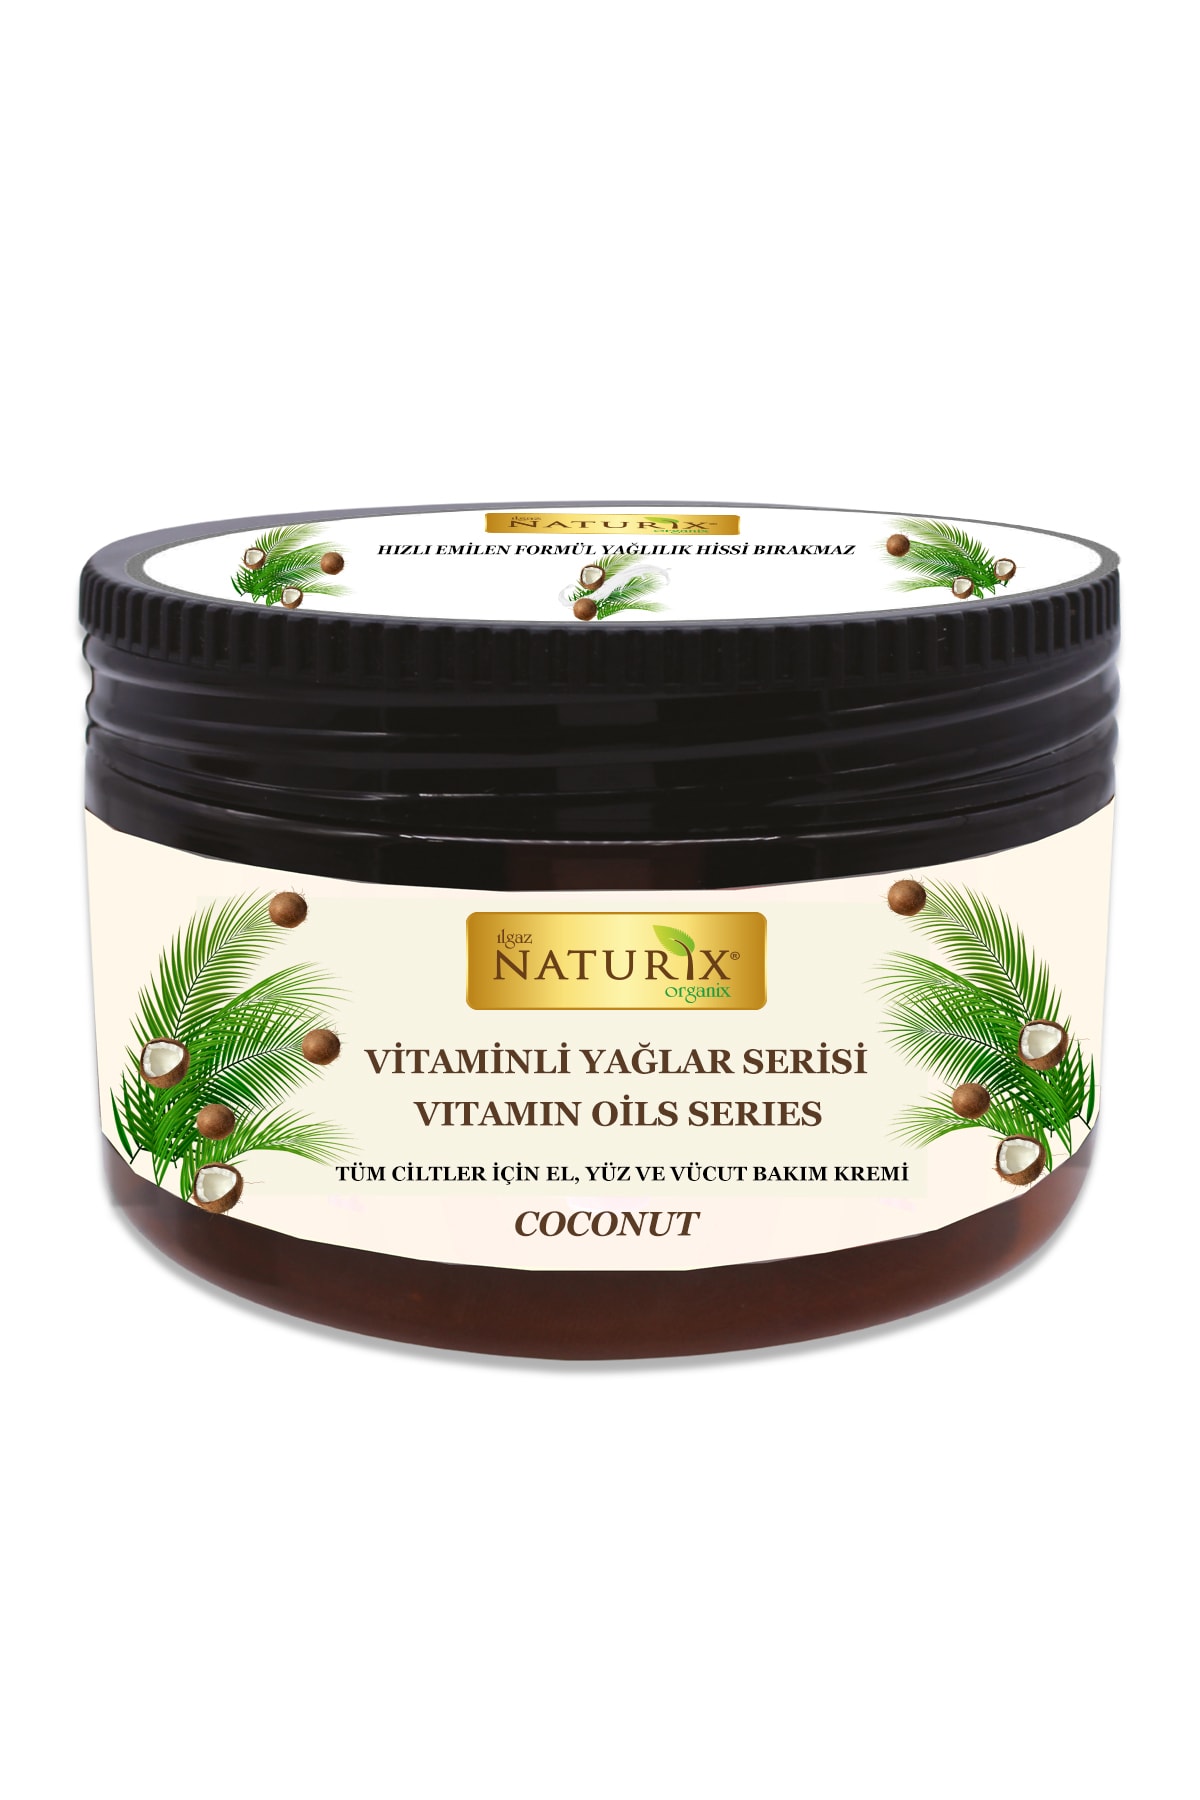 Naturix Değerli Yağlar Serisi Hindistan Cevizi Özlü El Yüz Vücut Kremi 250 ml Coconut Oil